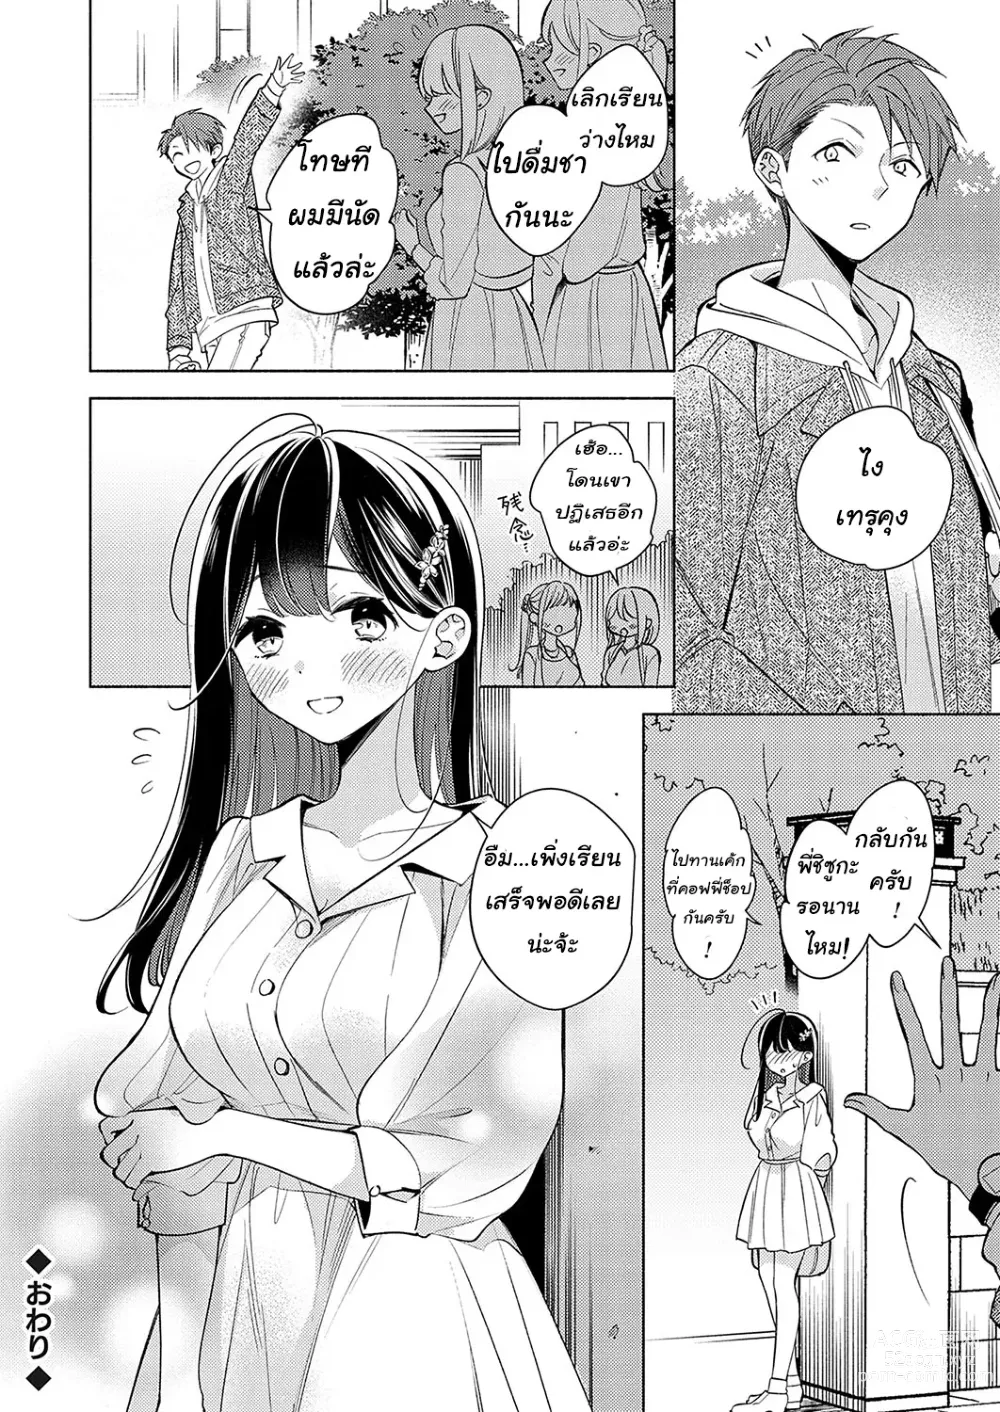 Page 22 of manga Neechan ga doukyusei ni naru made 30-nichi - onani chudoku ane no hiki komori dasshutsu keikaku